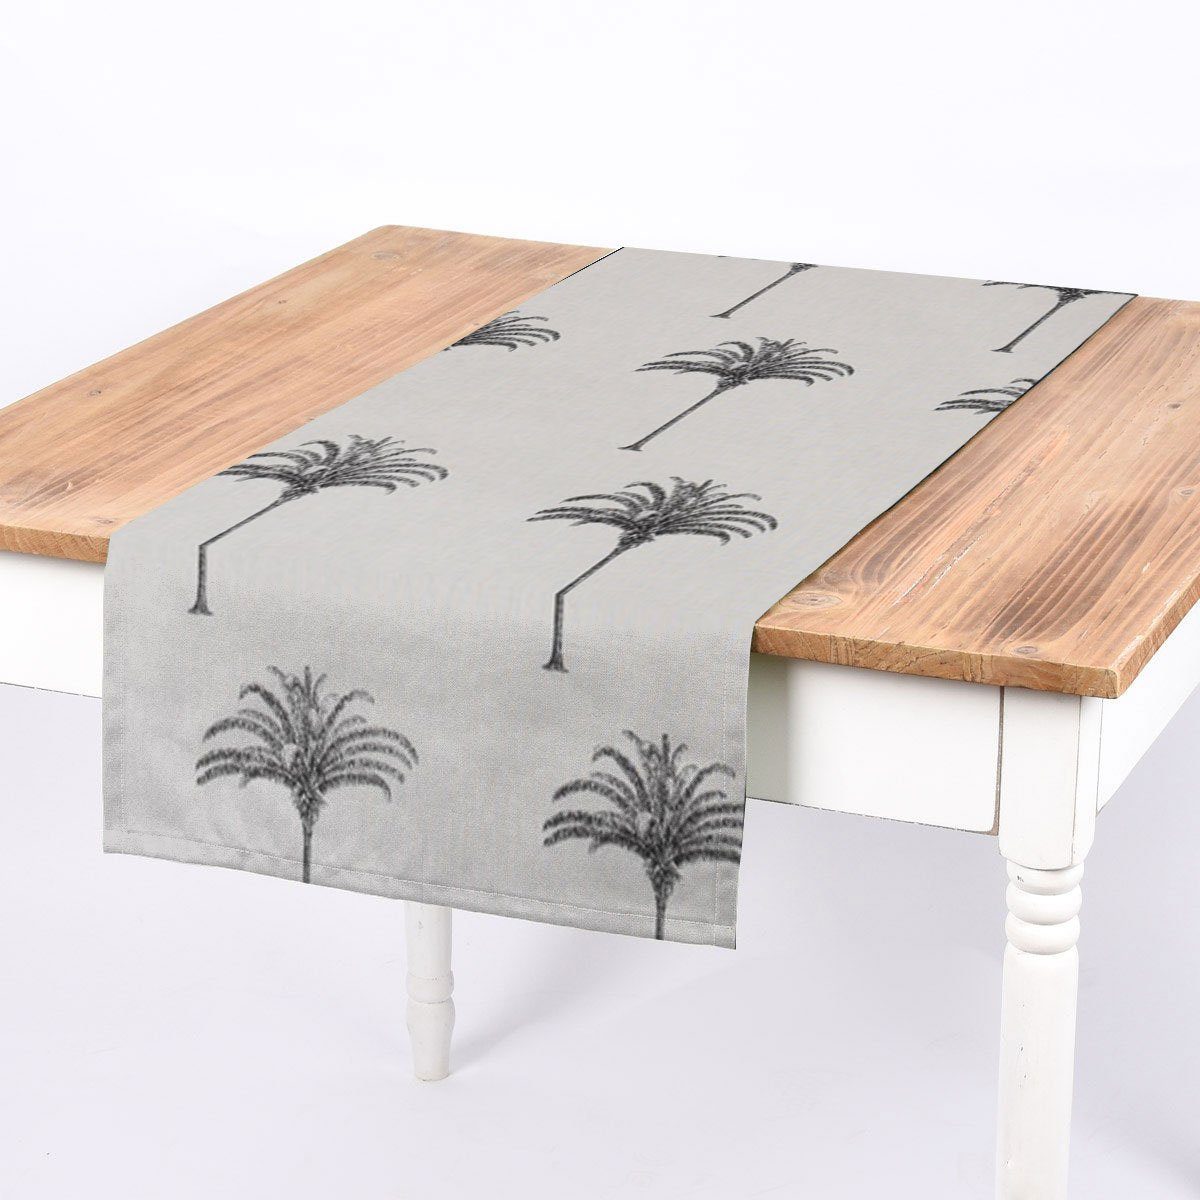 SCHÖNER LEBEN. Tischläufer SCHÖNER LEBEN. Tischläufer Palmen Botanik Tropical ecru schwarz, handmade